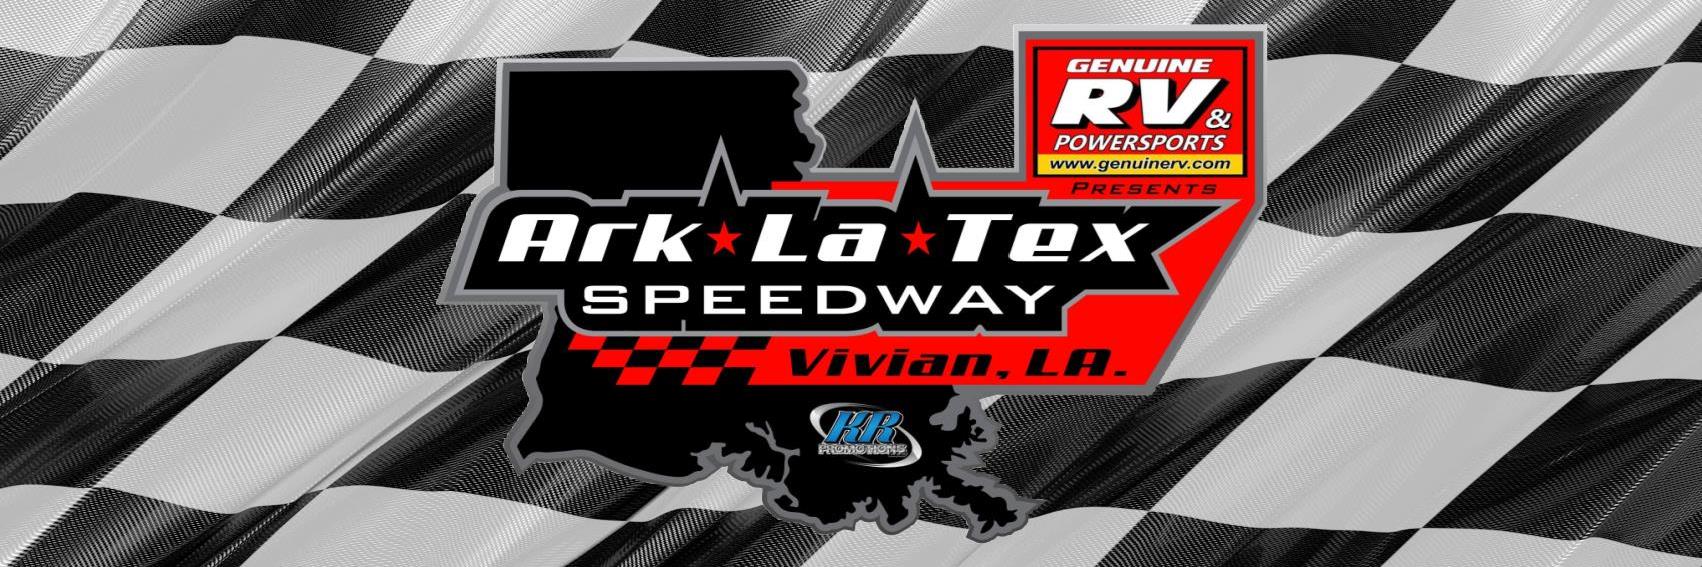 5/7/2016 - Ark-La-Tex Speedway